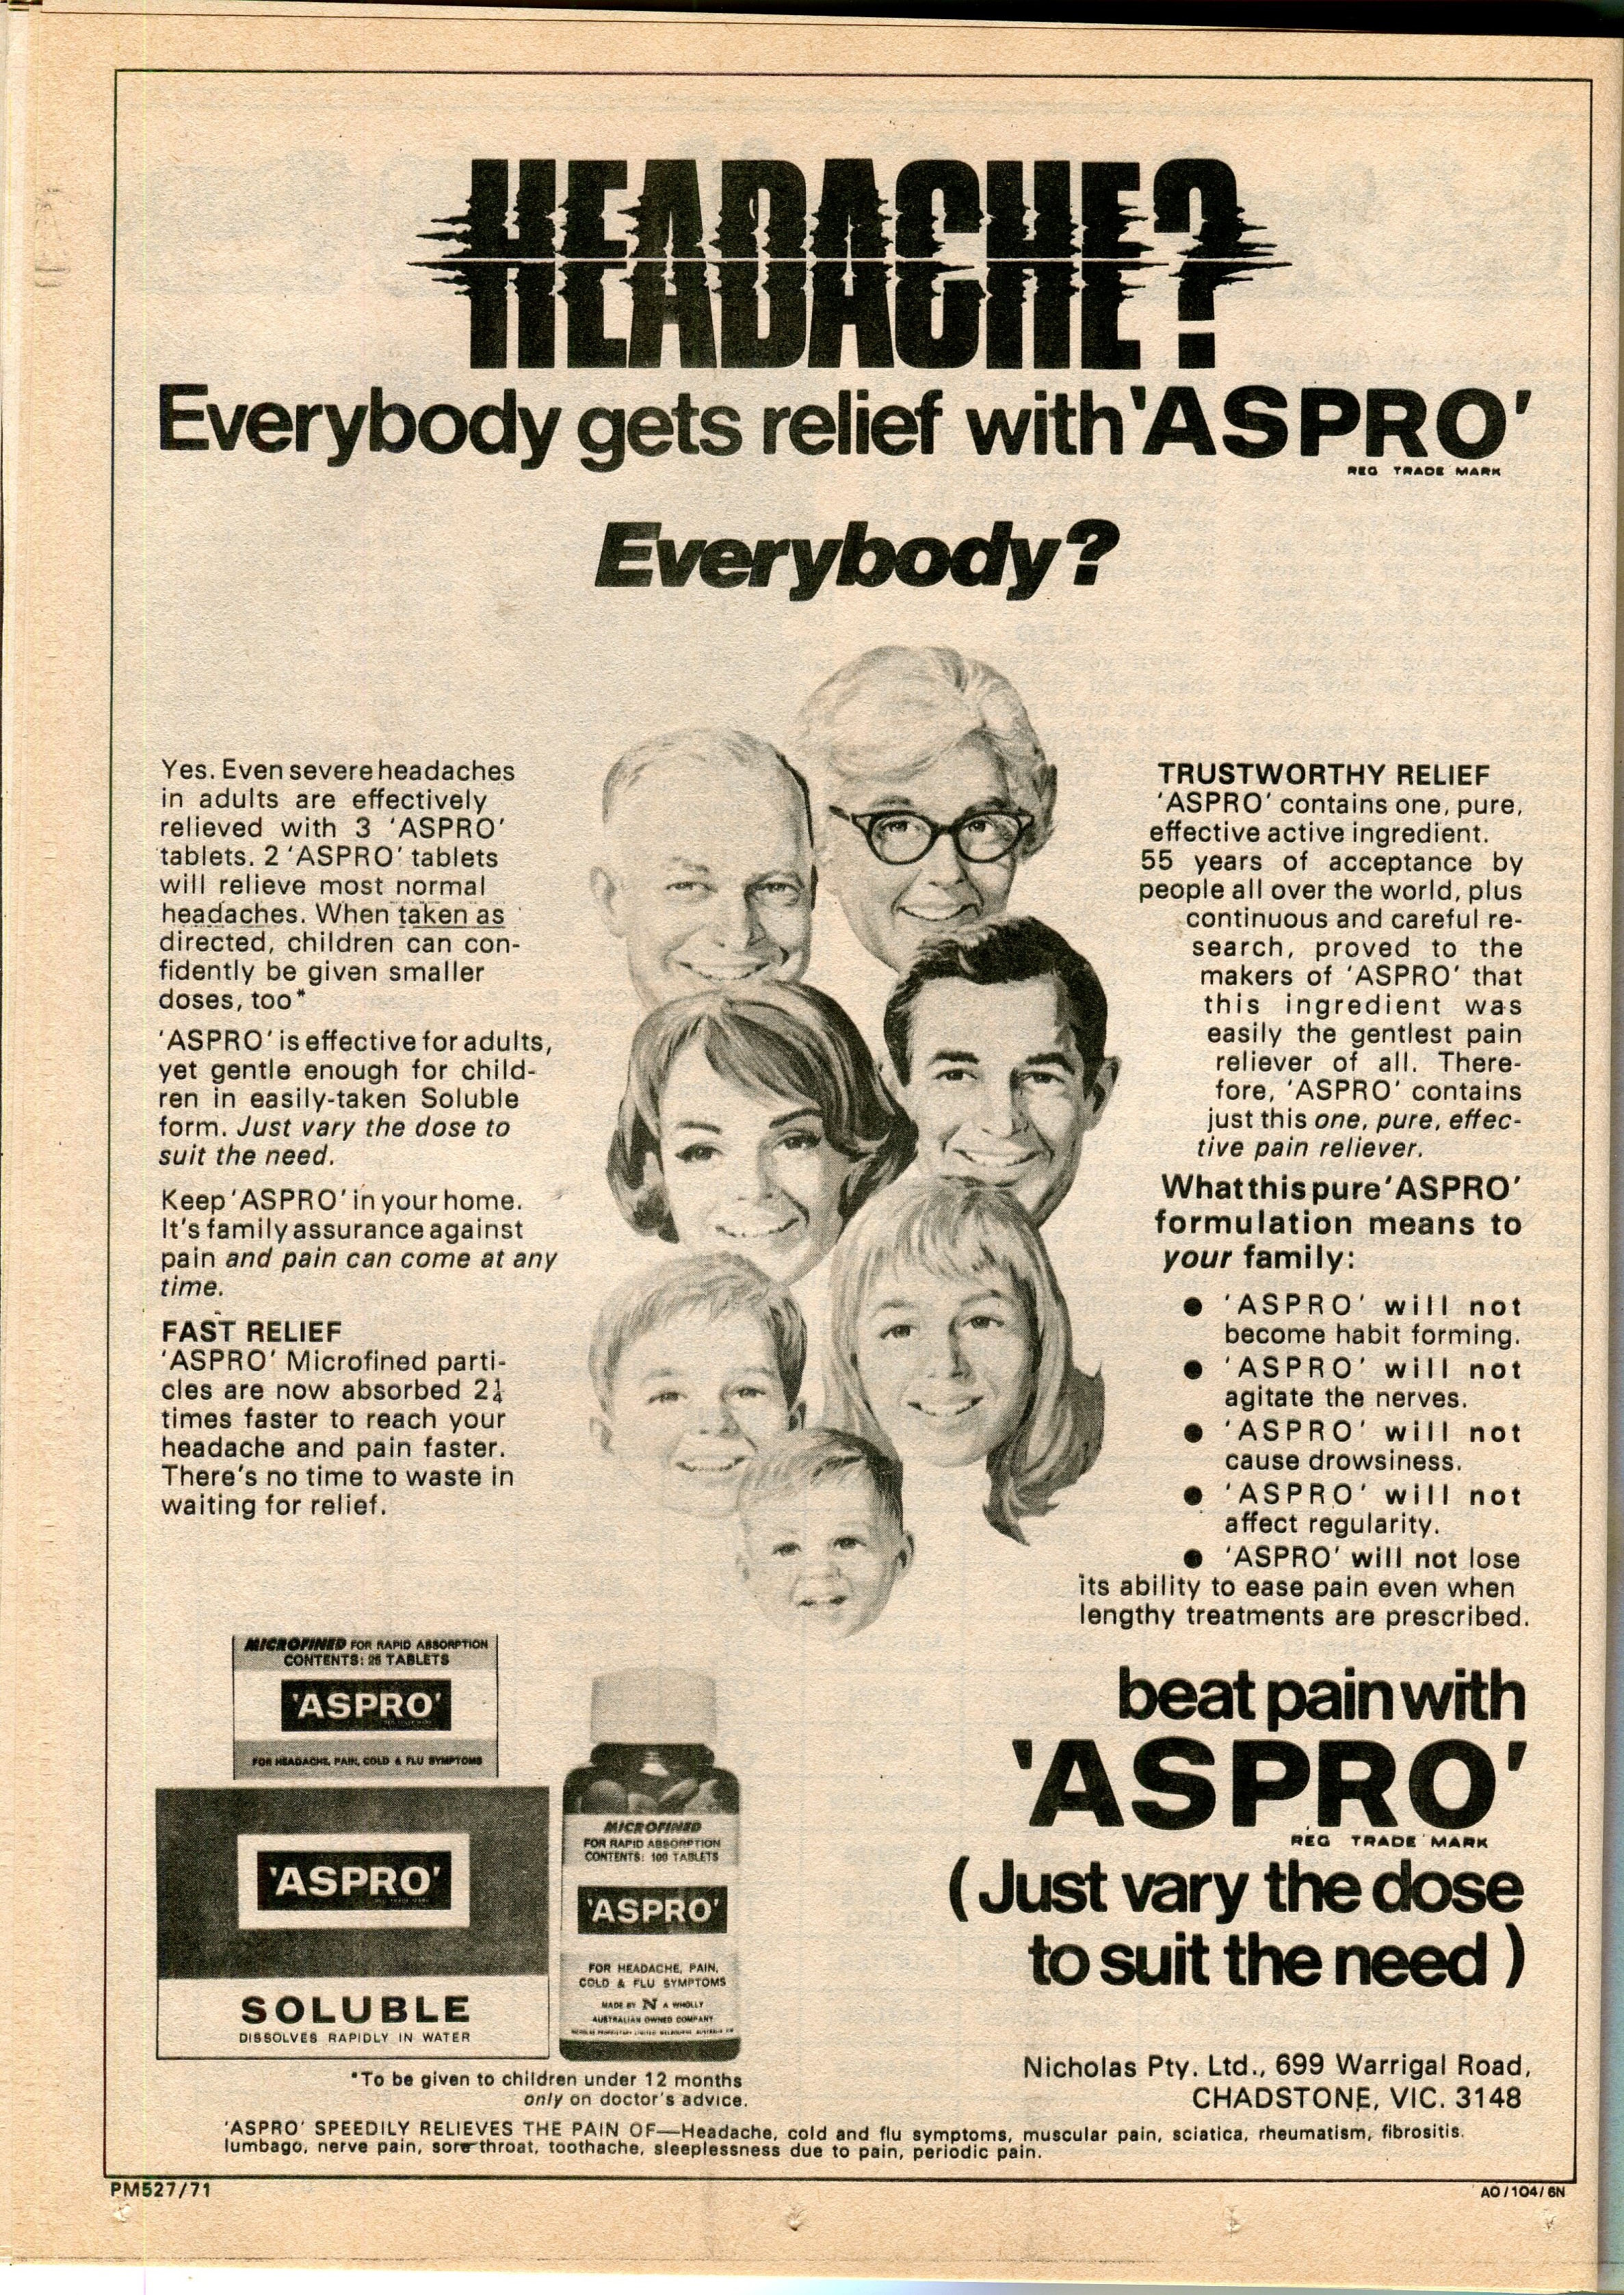 1936 Vintage Werbung Aspirin V0476 Tabletten Von Aspirin Werbung Oldtimer 